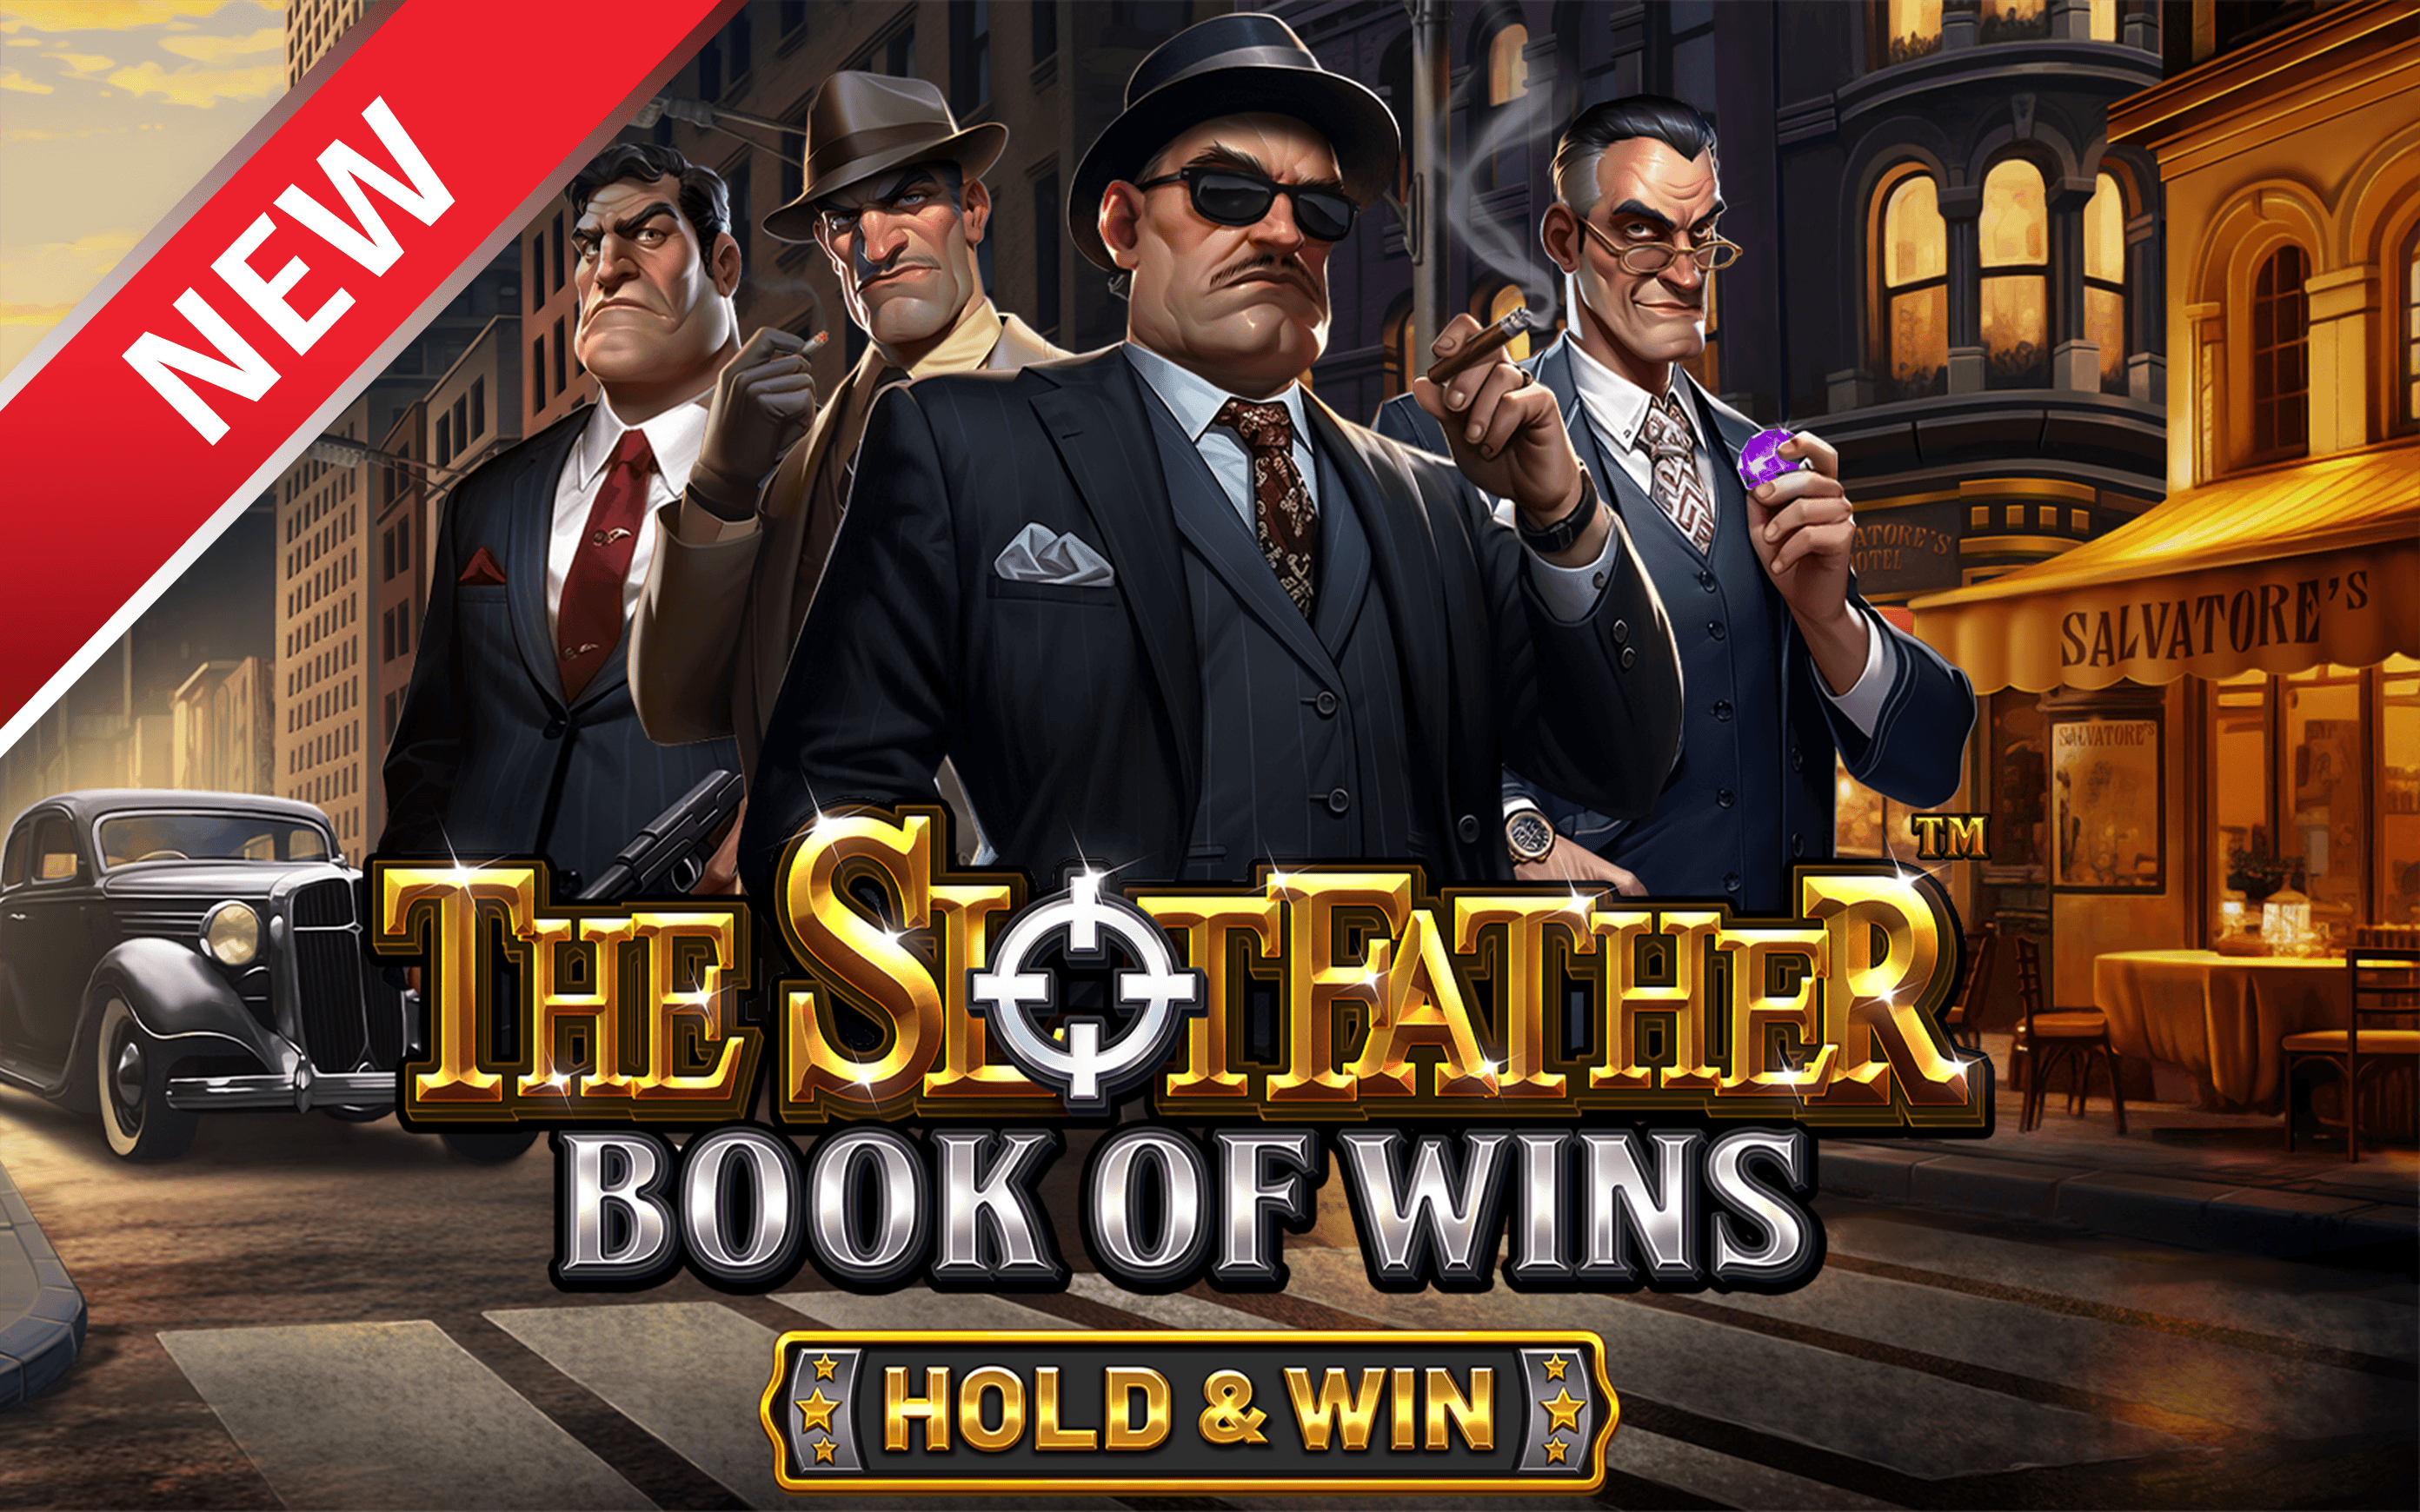 Juega a The Slotfather: Book of Wins - Hold & Win™ en el casino en línea de Starcasino.be